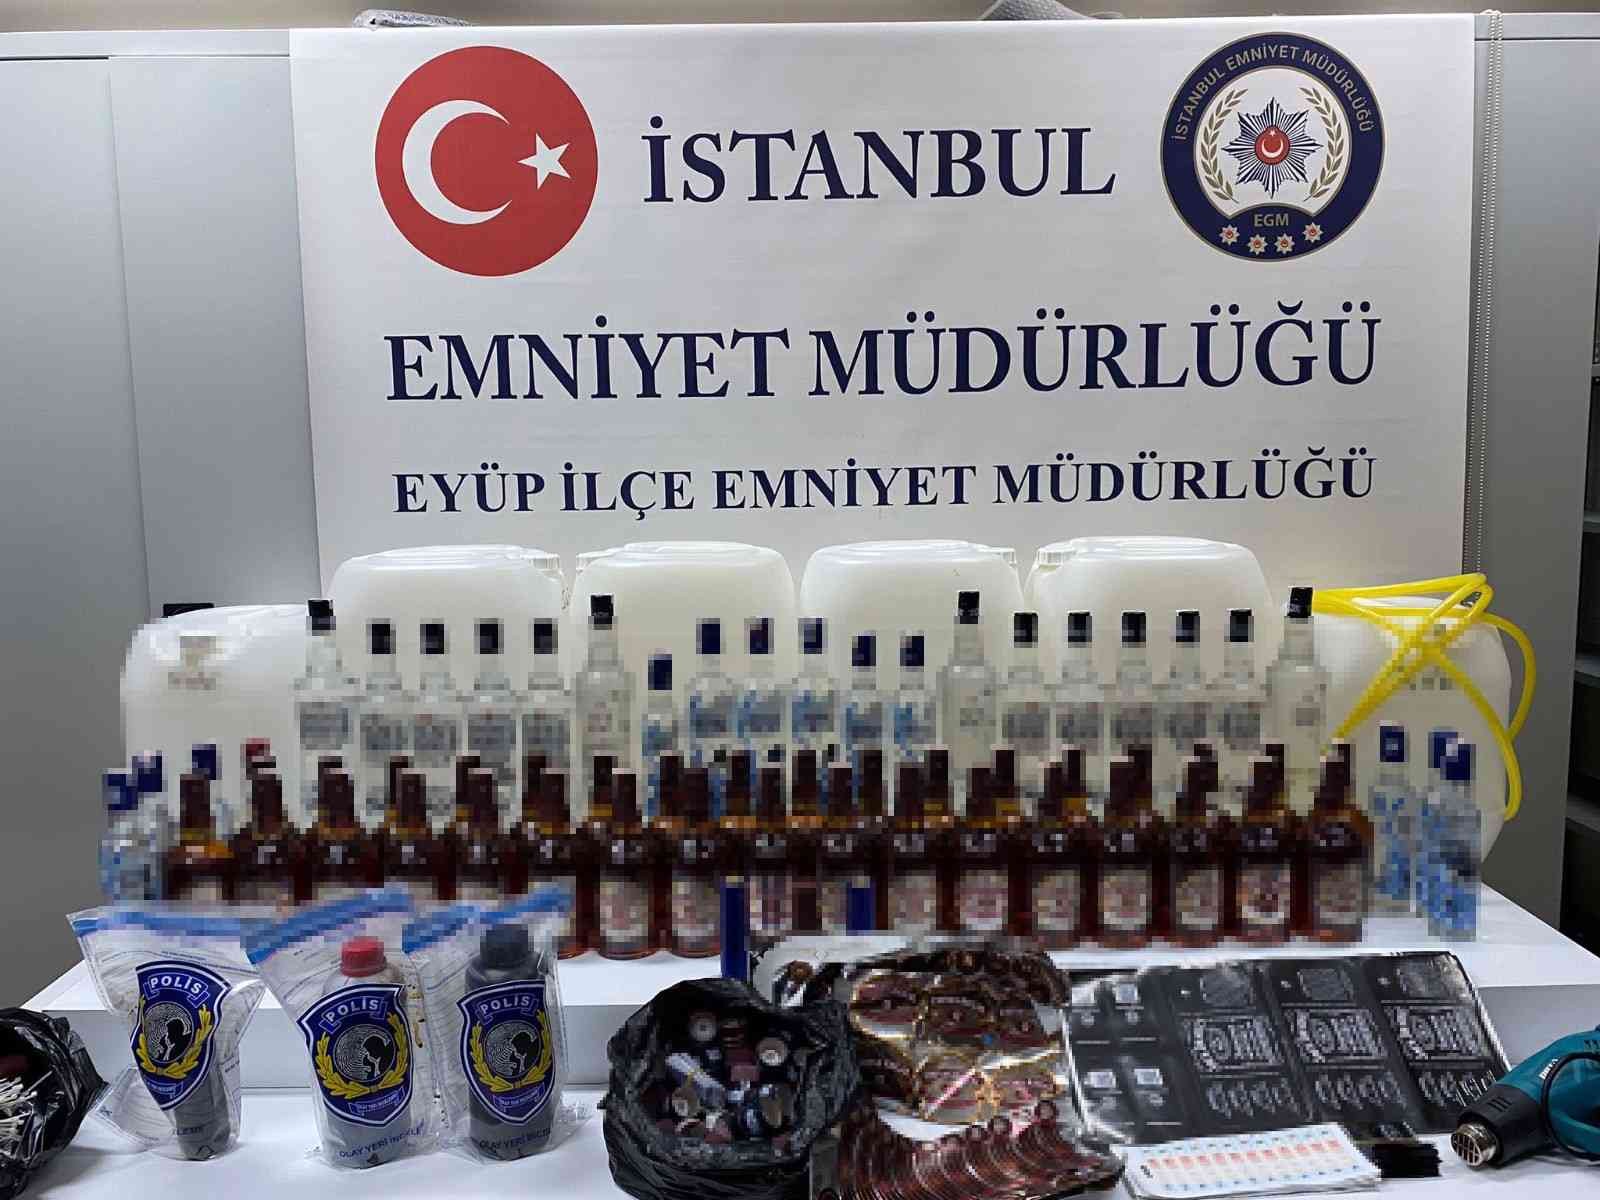 Eyüpsultan’da sahte içki operasyonu: 3 gözaltı #istanbul